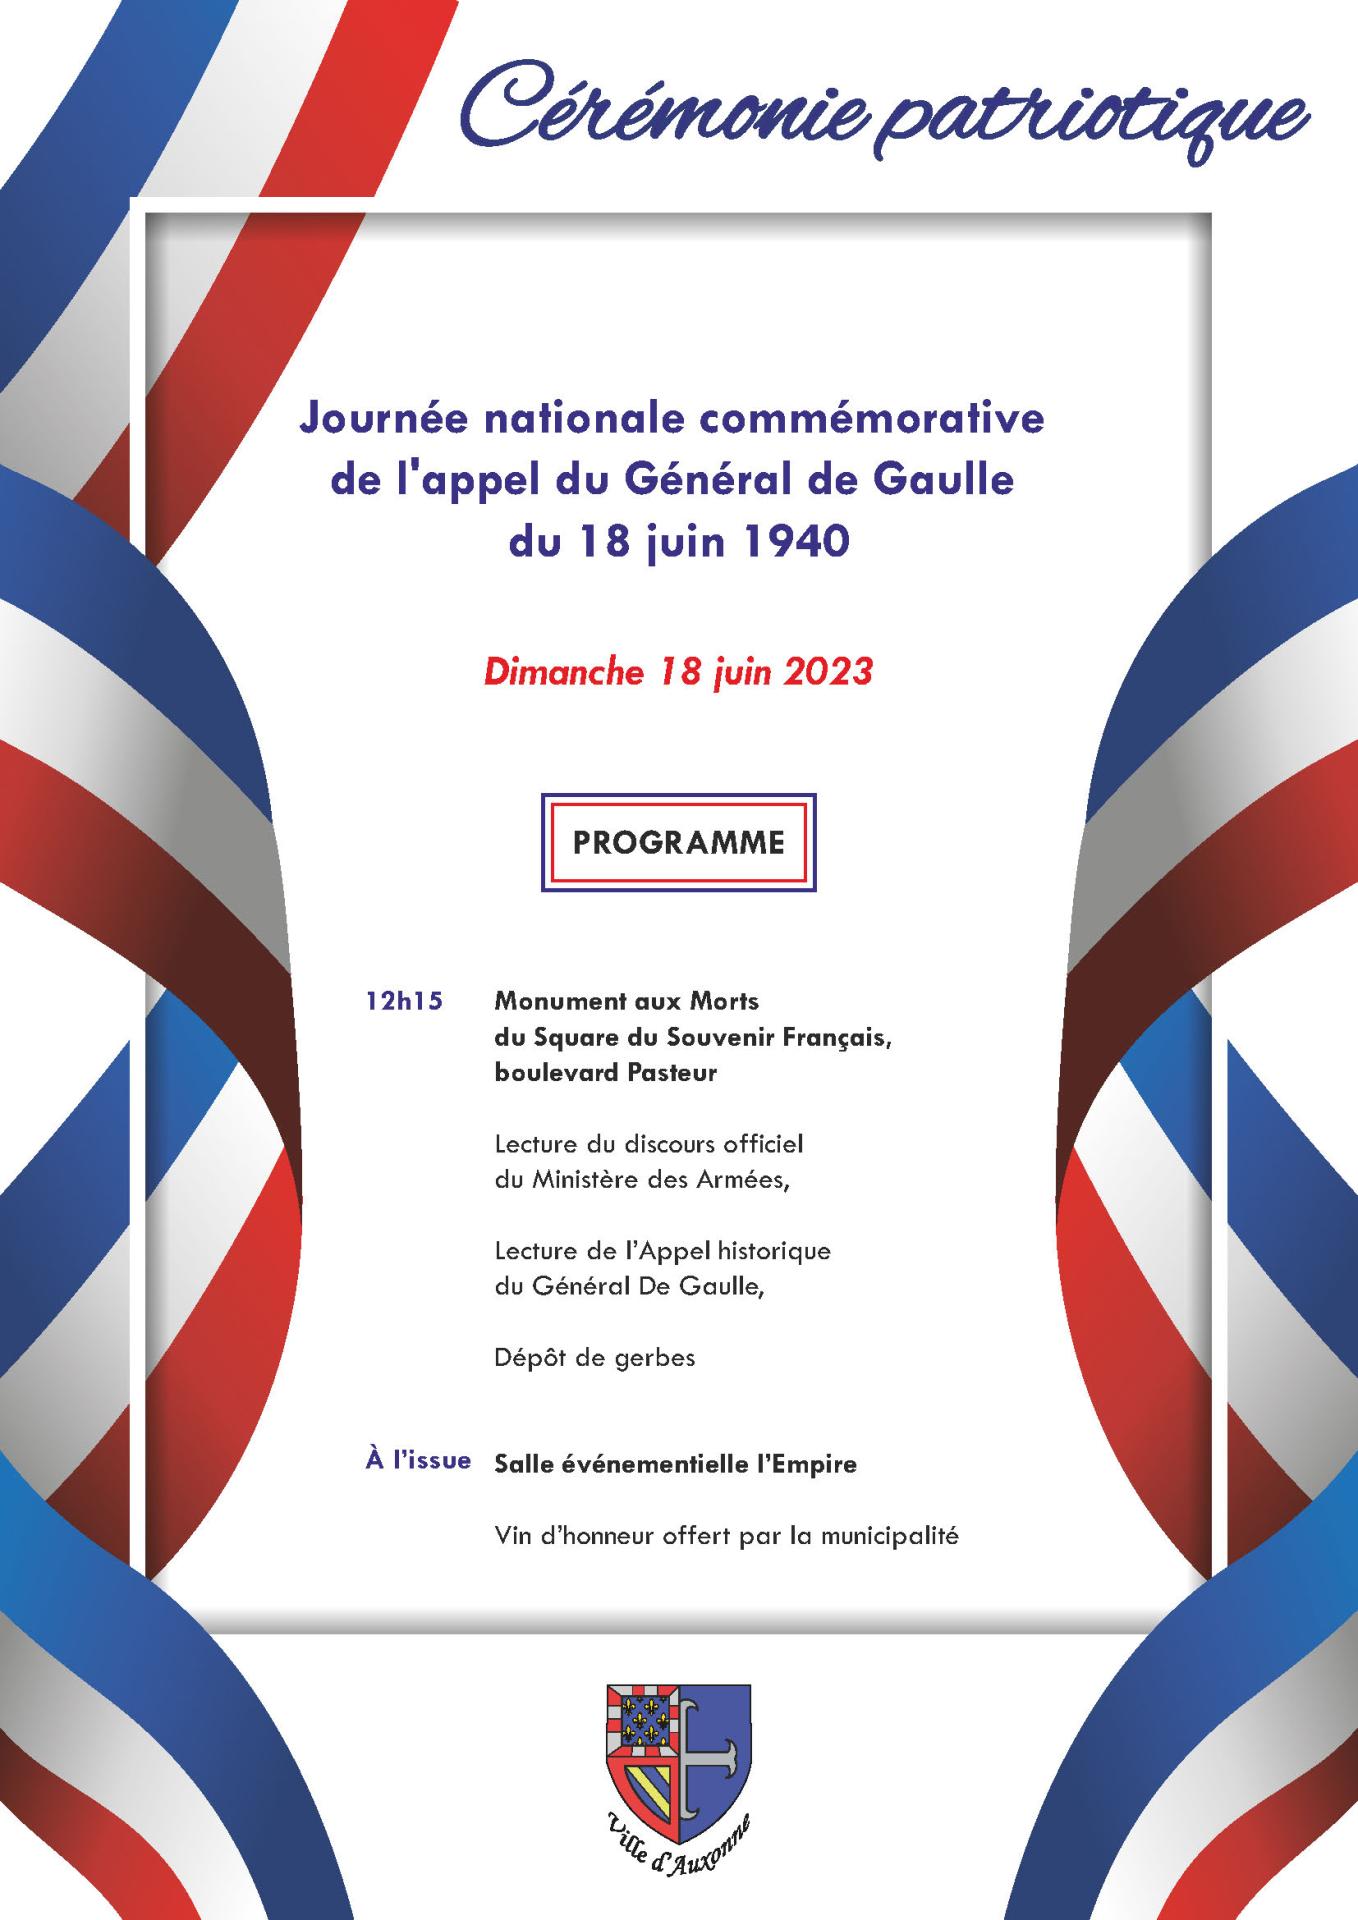 Journée nationale commémorative de l'appel du Général de Gaulle du 18 juin 1940